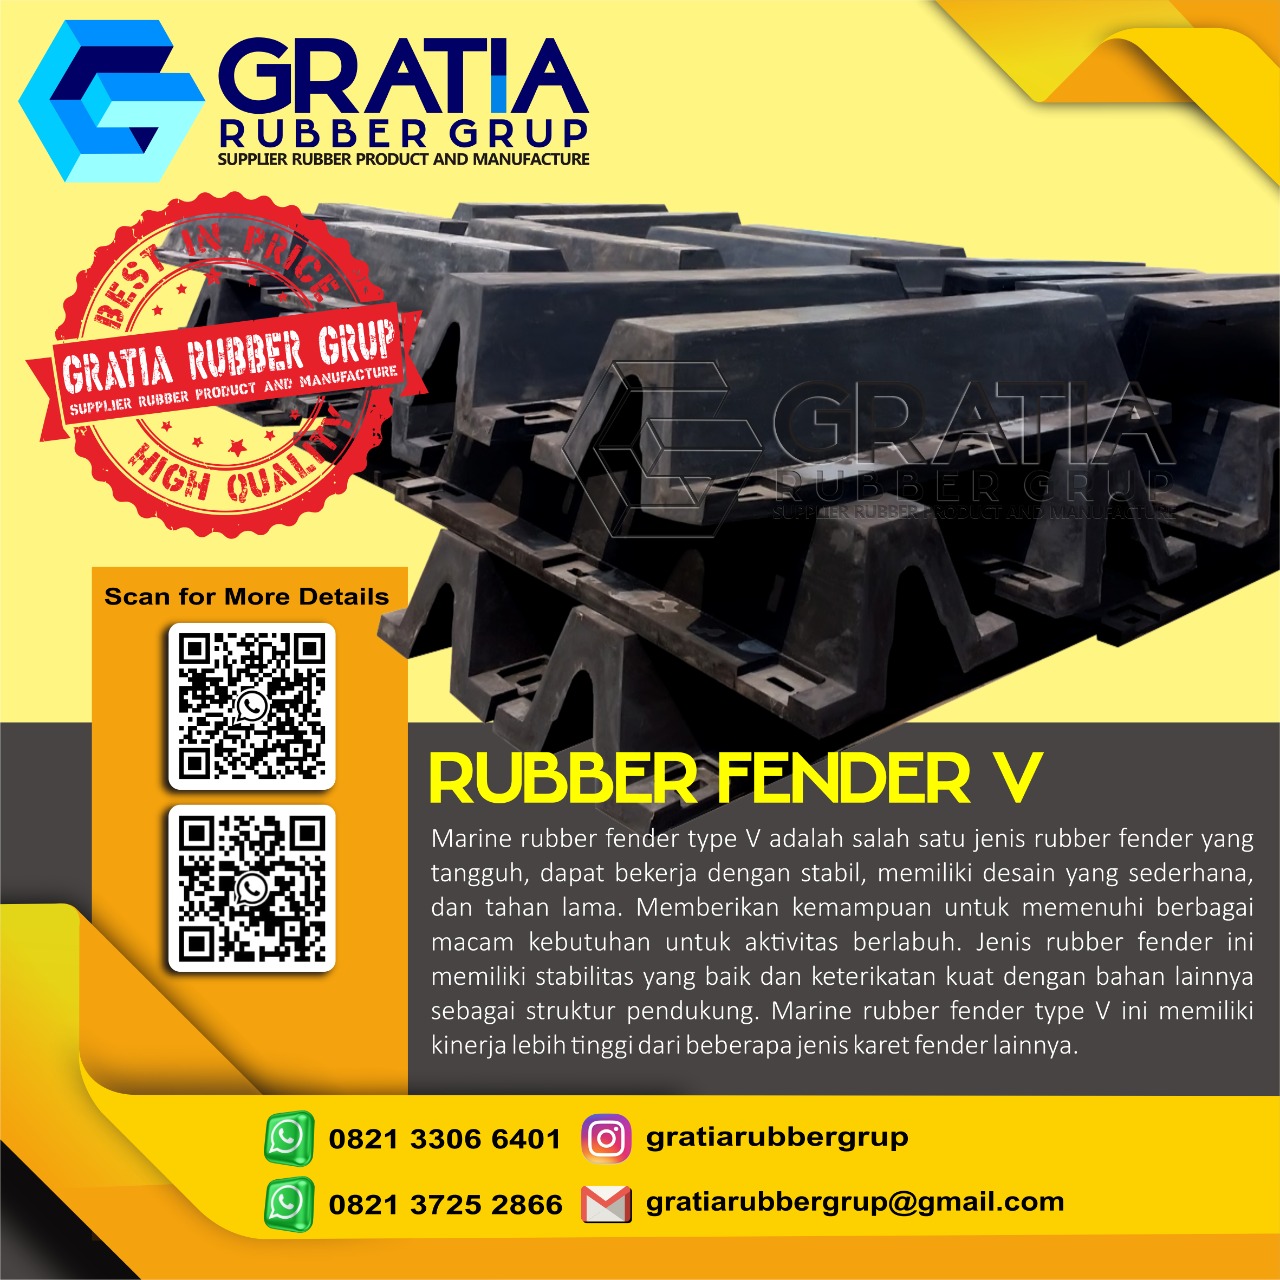 Distributor Rubber Fender Boat Murah Dan Berkualitas  Melayani Pengiriman Ke Palembang Sumatera Selatan Hub 0821 3306 0461